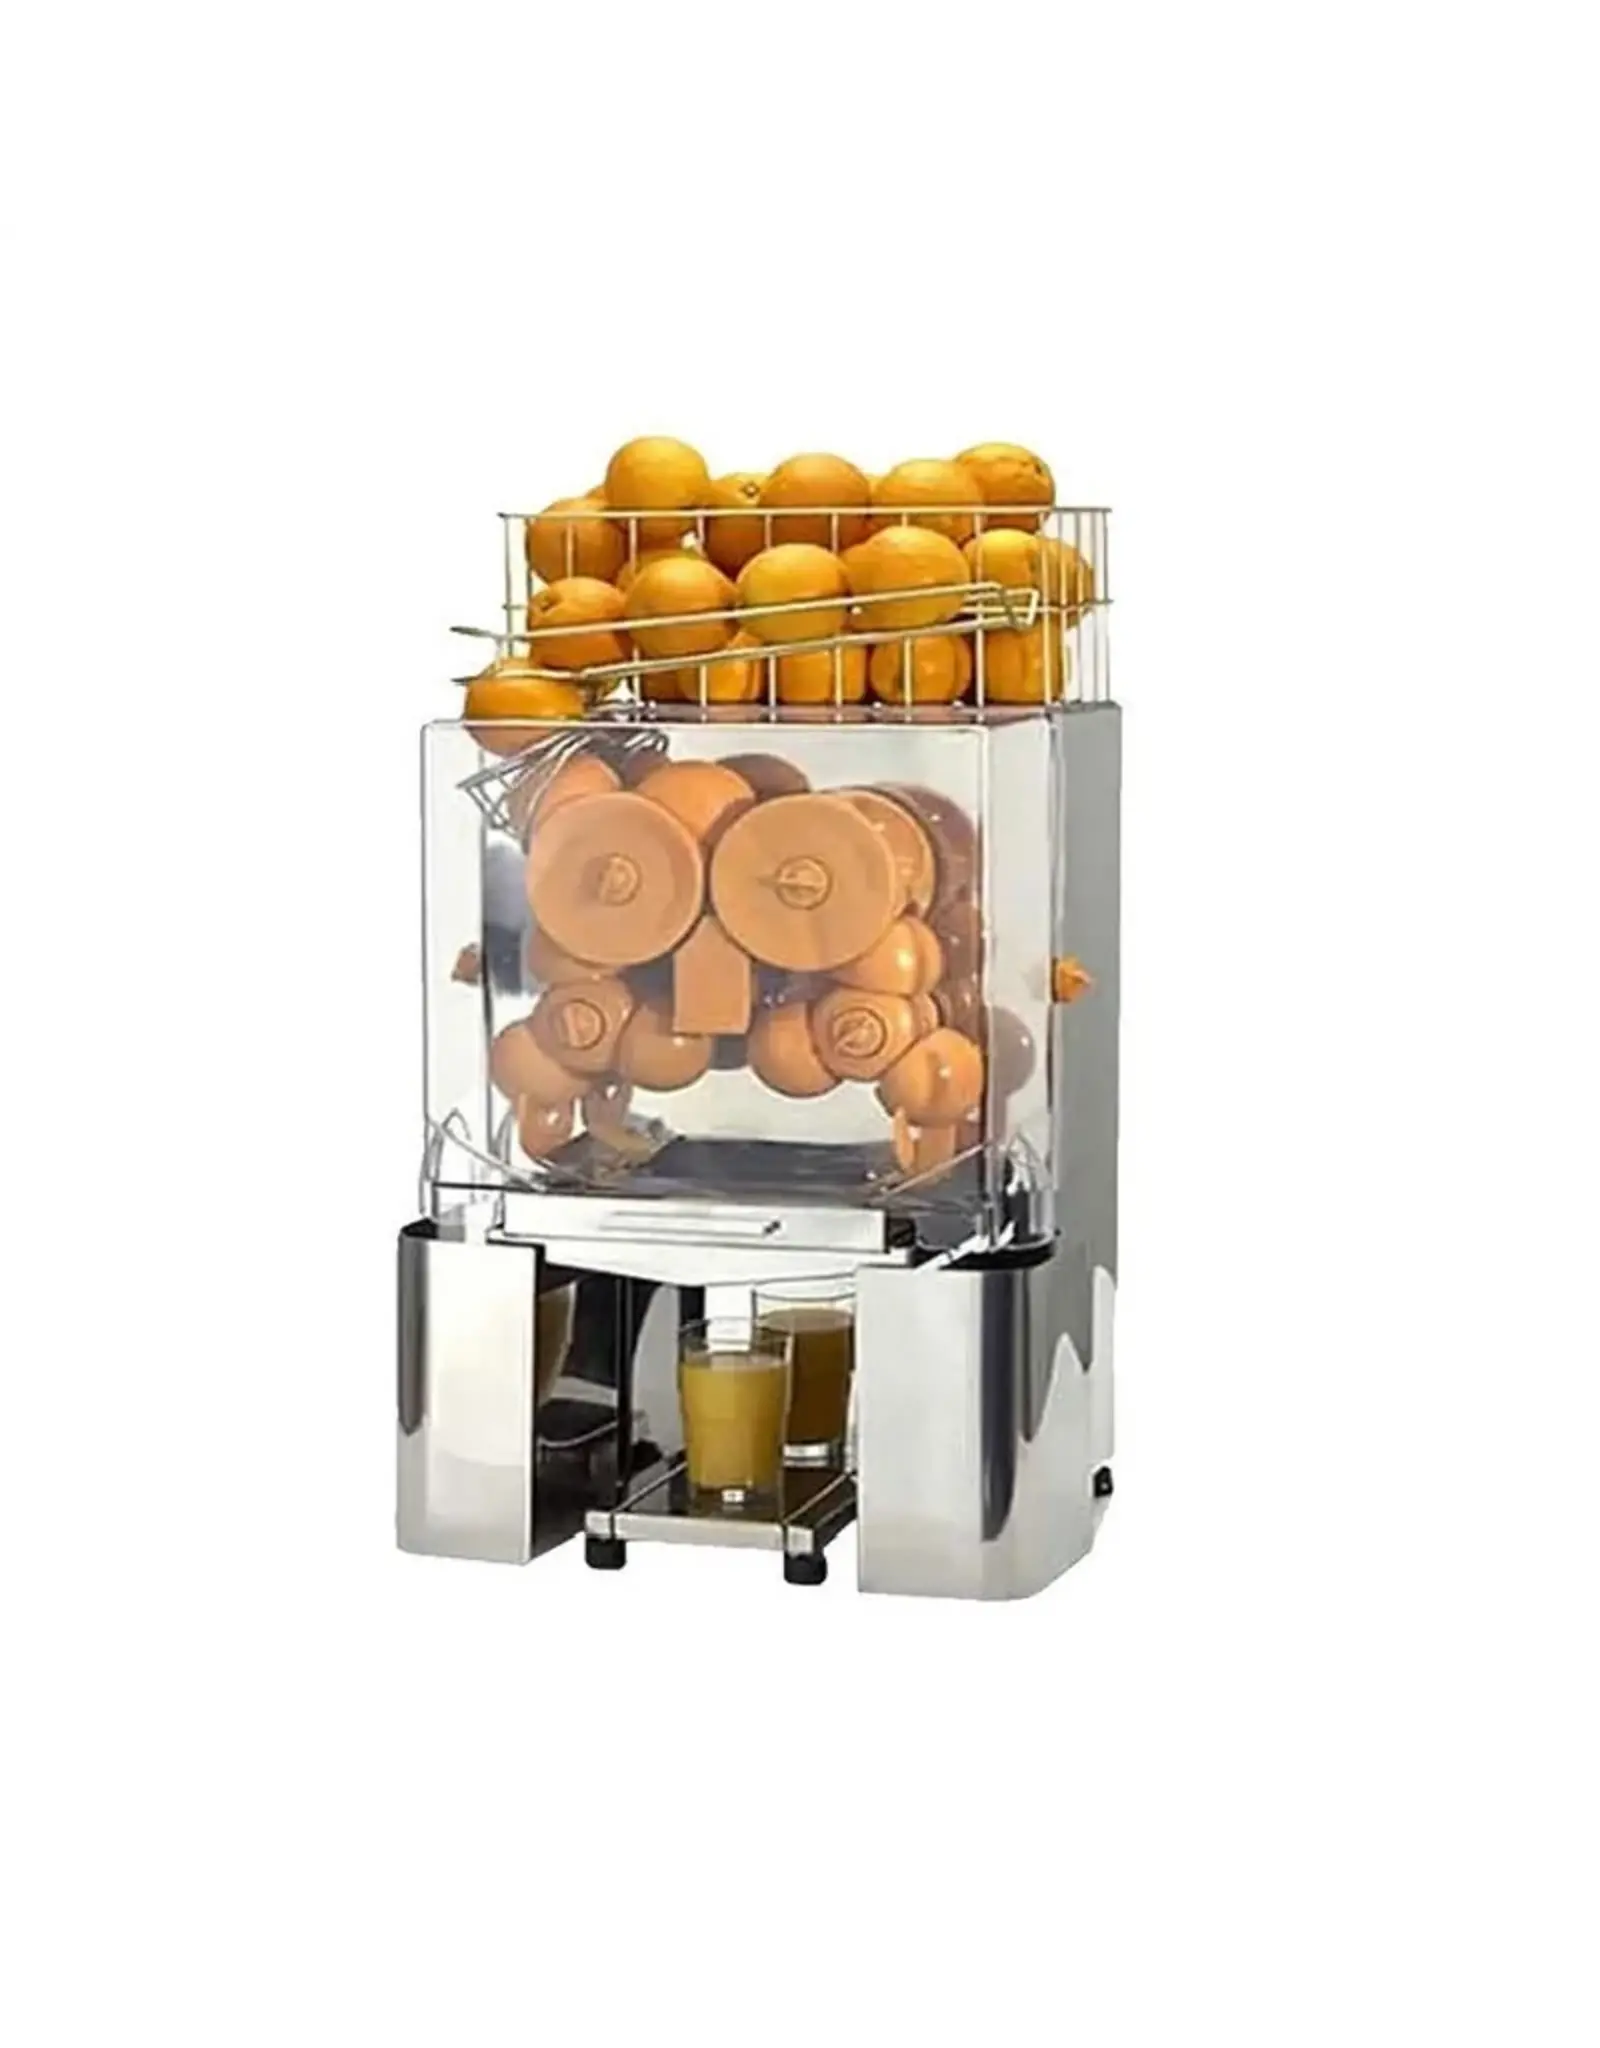 March Automatische Sinaasappelpers Citruspers - 8 Kg - 25 p/m - met Tapkraan